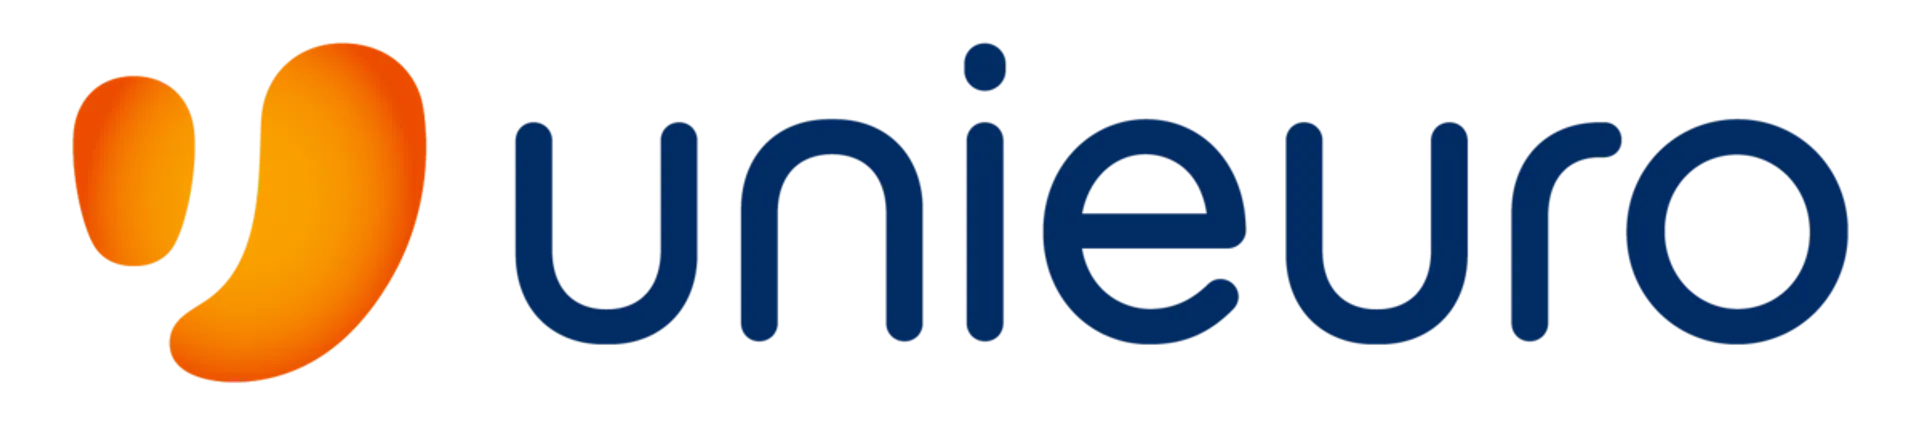 UNIEURO logo